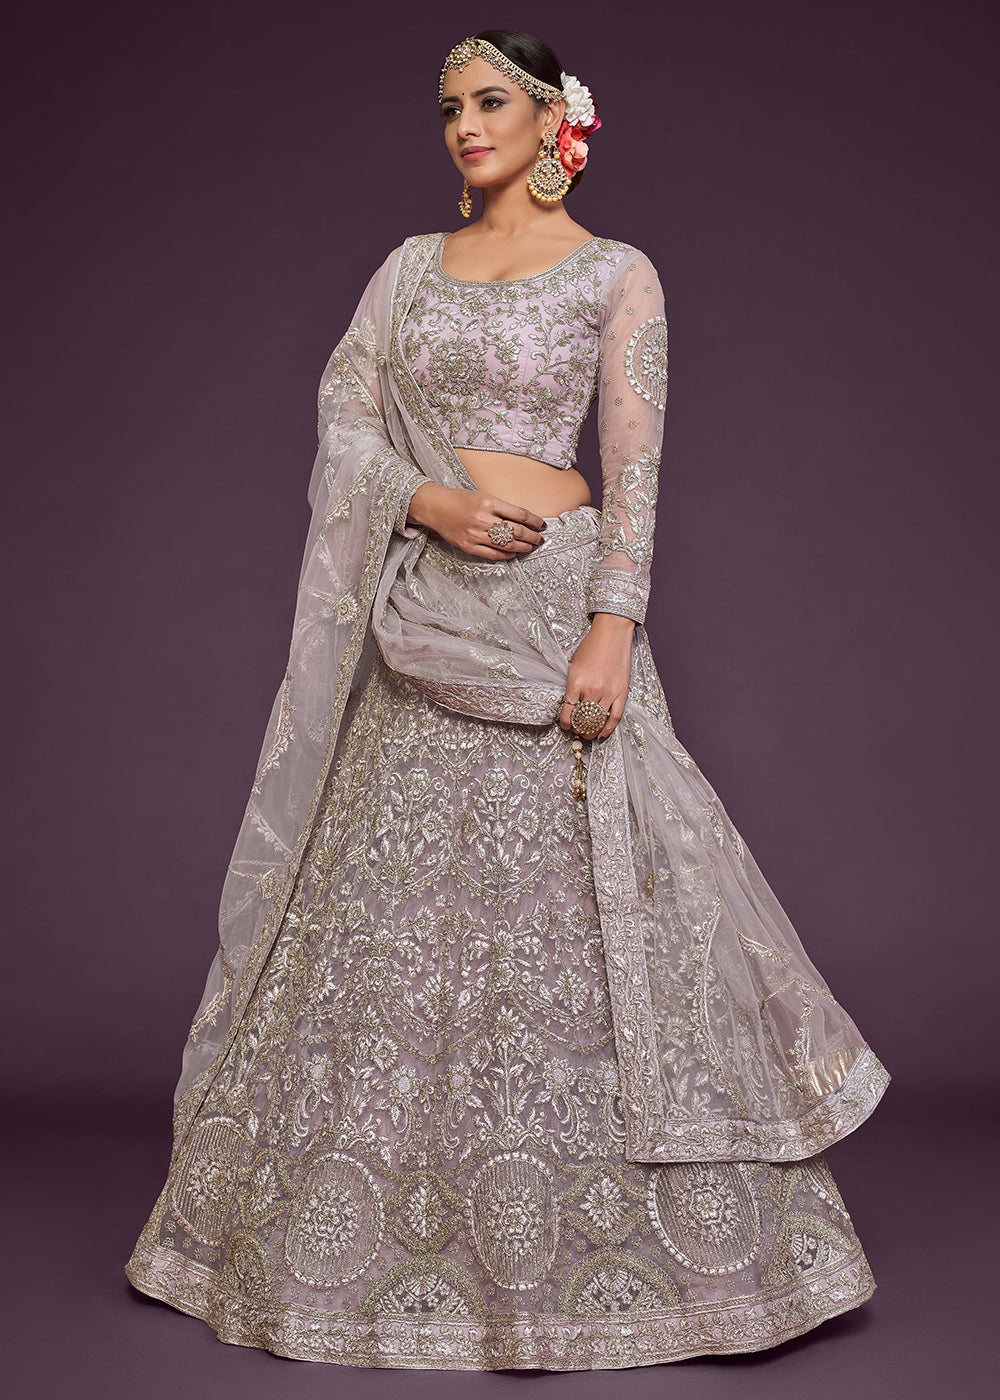 Buy Now Dusky Mauve Embroidered Soft Net Wedding Lehenga Choli Online in USA, UK, Canada & Worldwide at Empress Clothing.